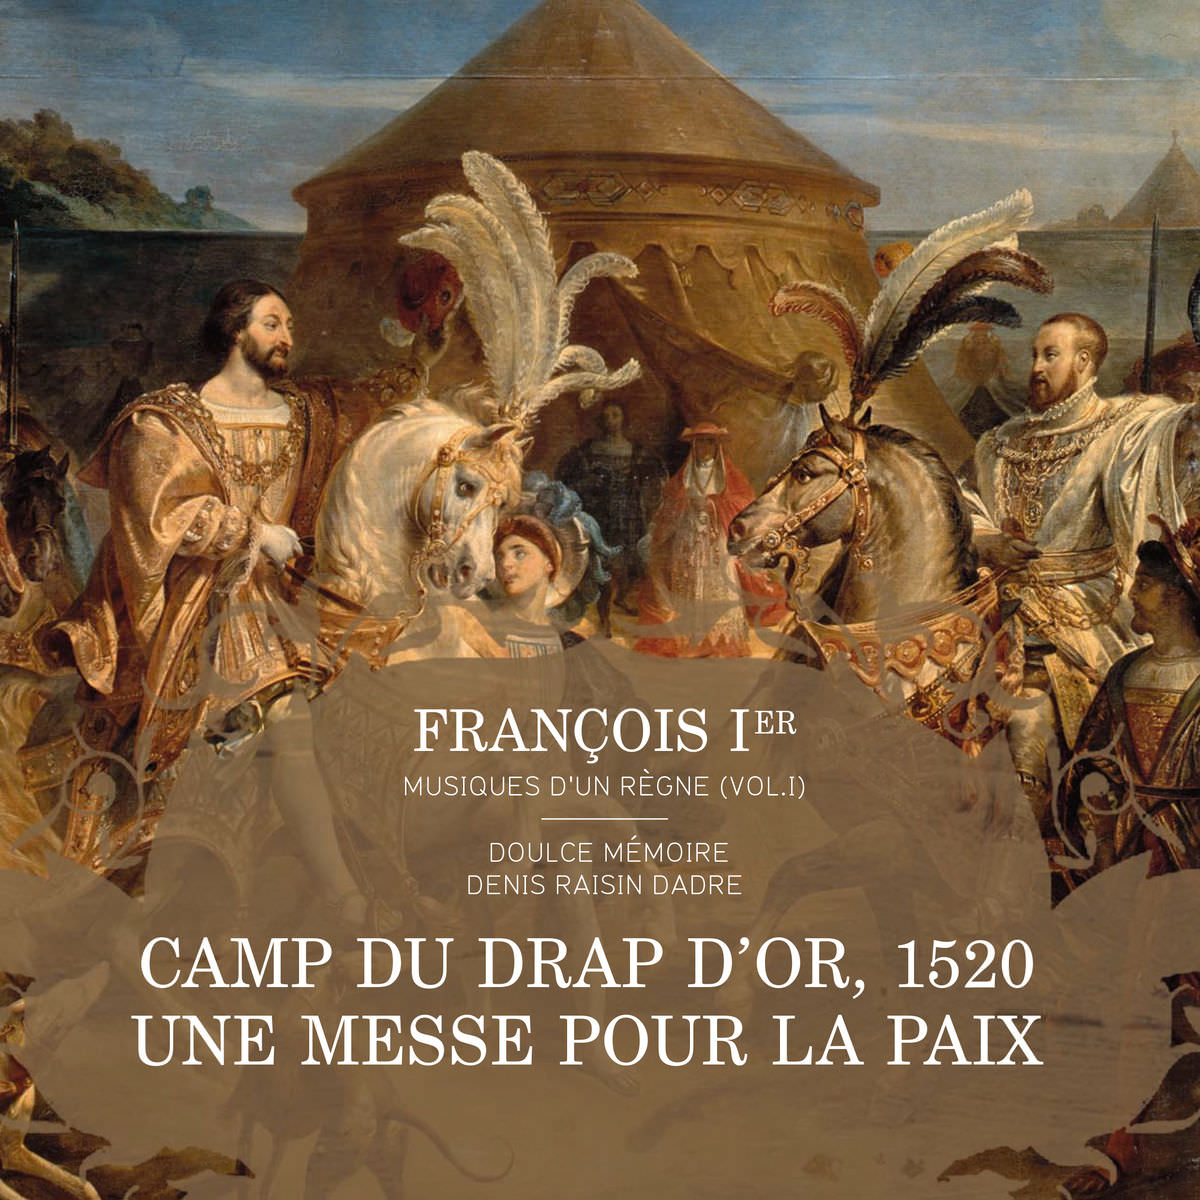 Denis Raisin Dadre & Doulce Memoire - Francois Ier, musiques d’un regne, Vol. 1 (2015) [Qobuz FLAC 24bit/88,2kHz]